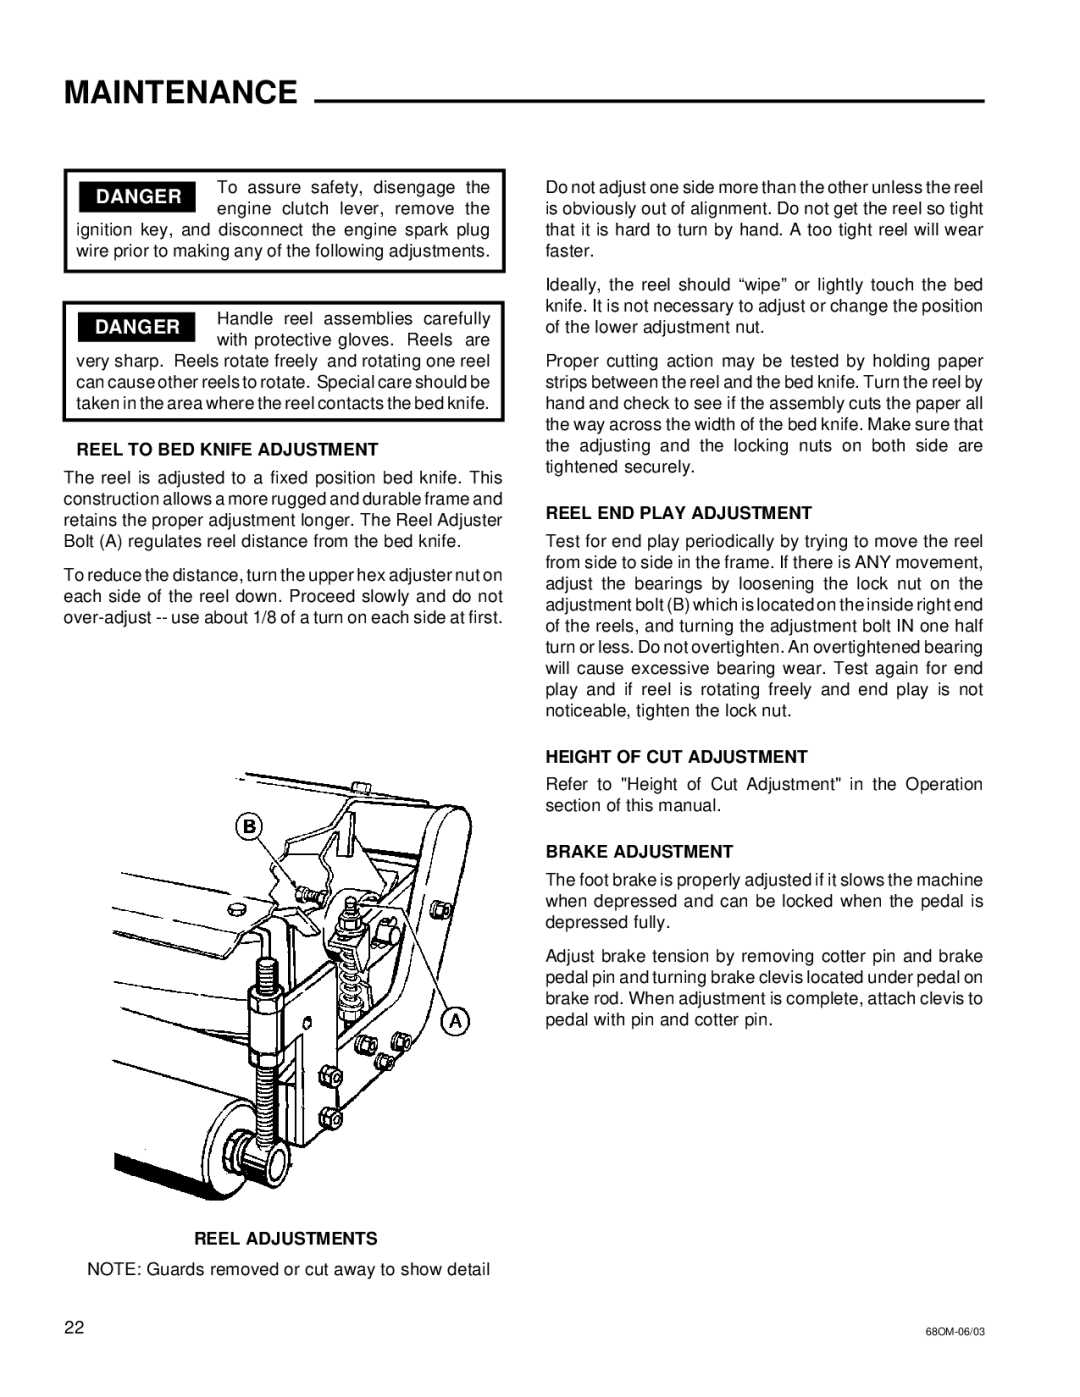 National Mower 68 SR, 68 DL Reel Adjustments, Reel END Play Adjustment, Height of CUT Adjustment, Brake Adjustment 